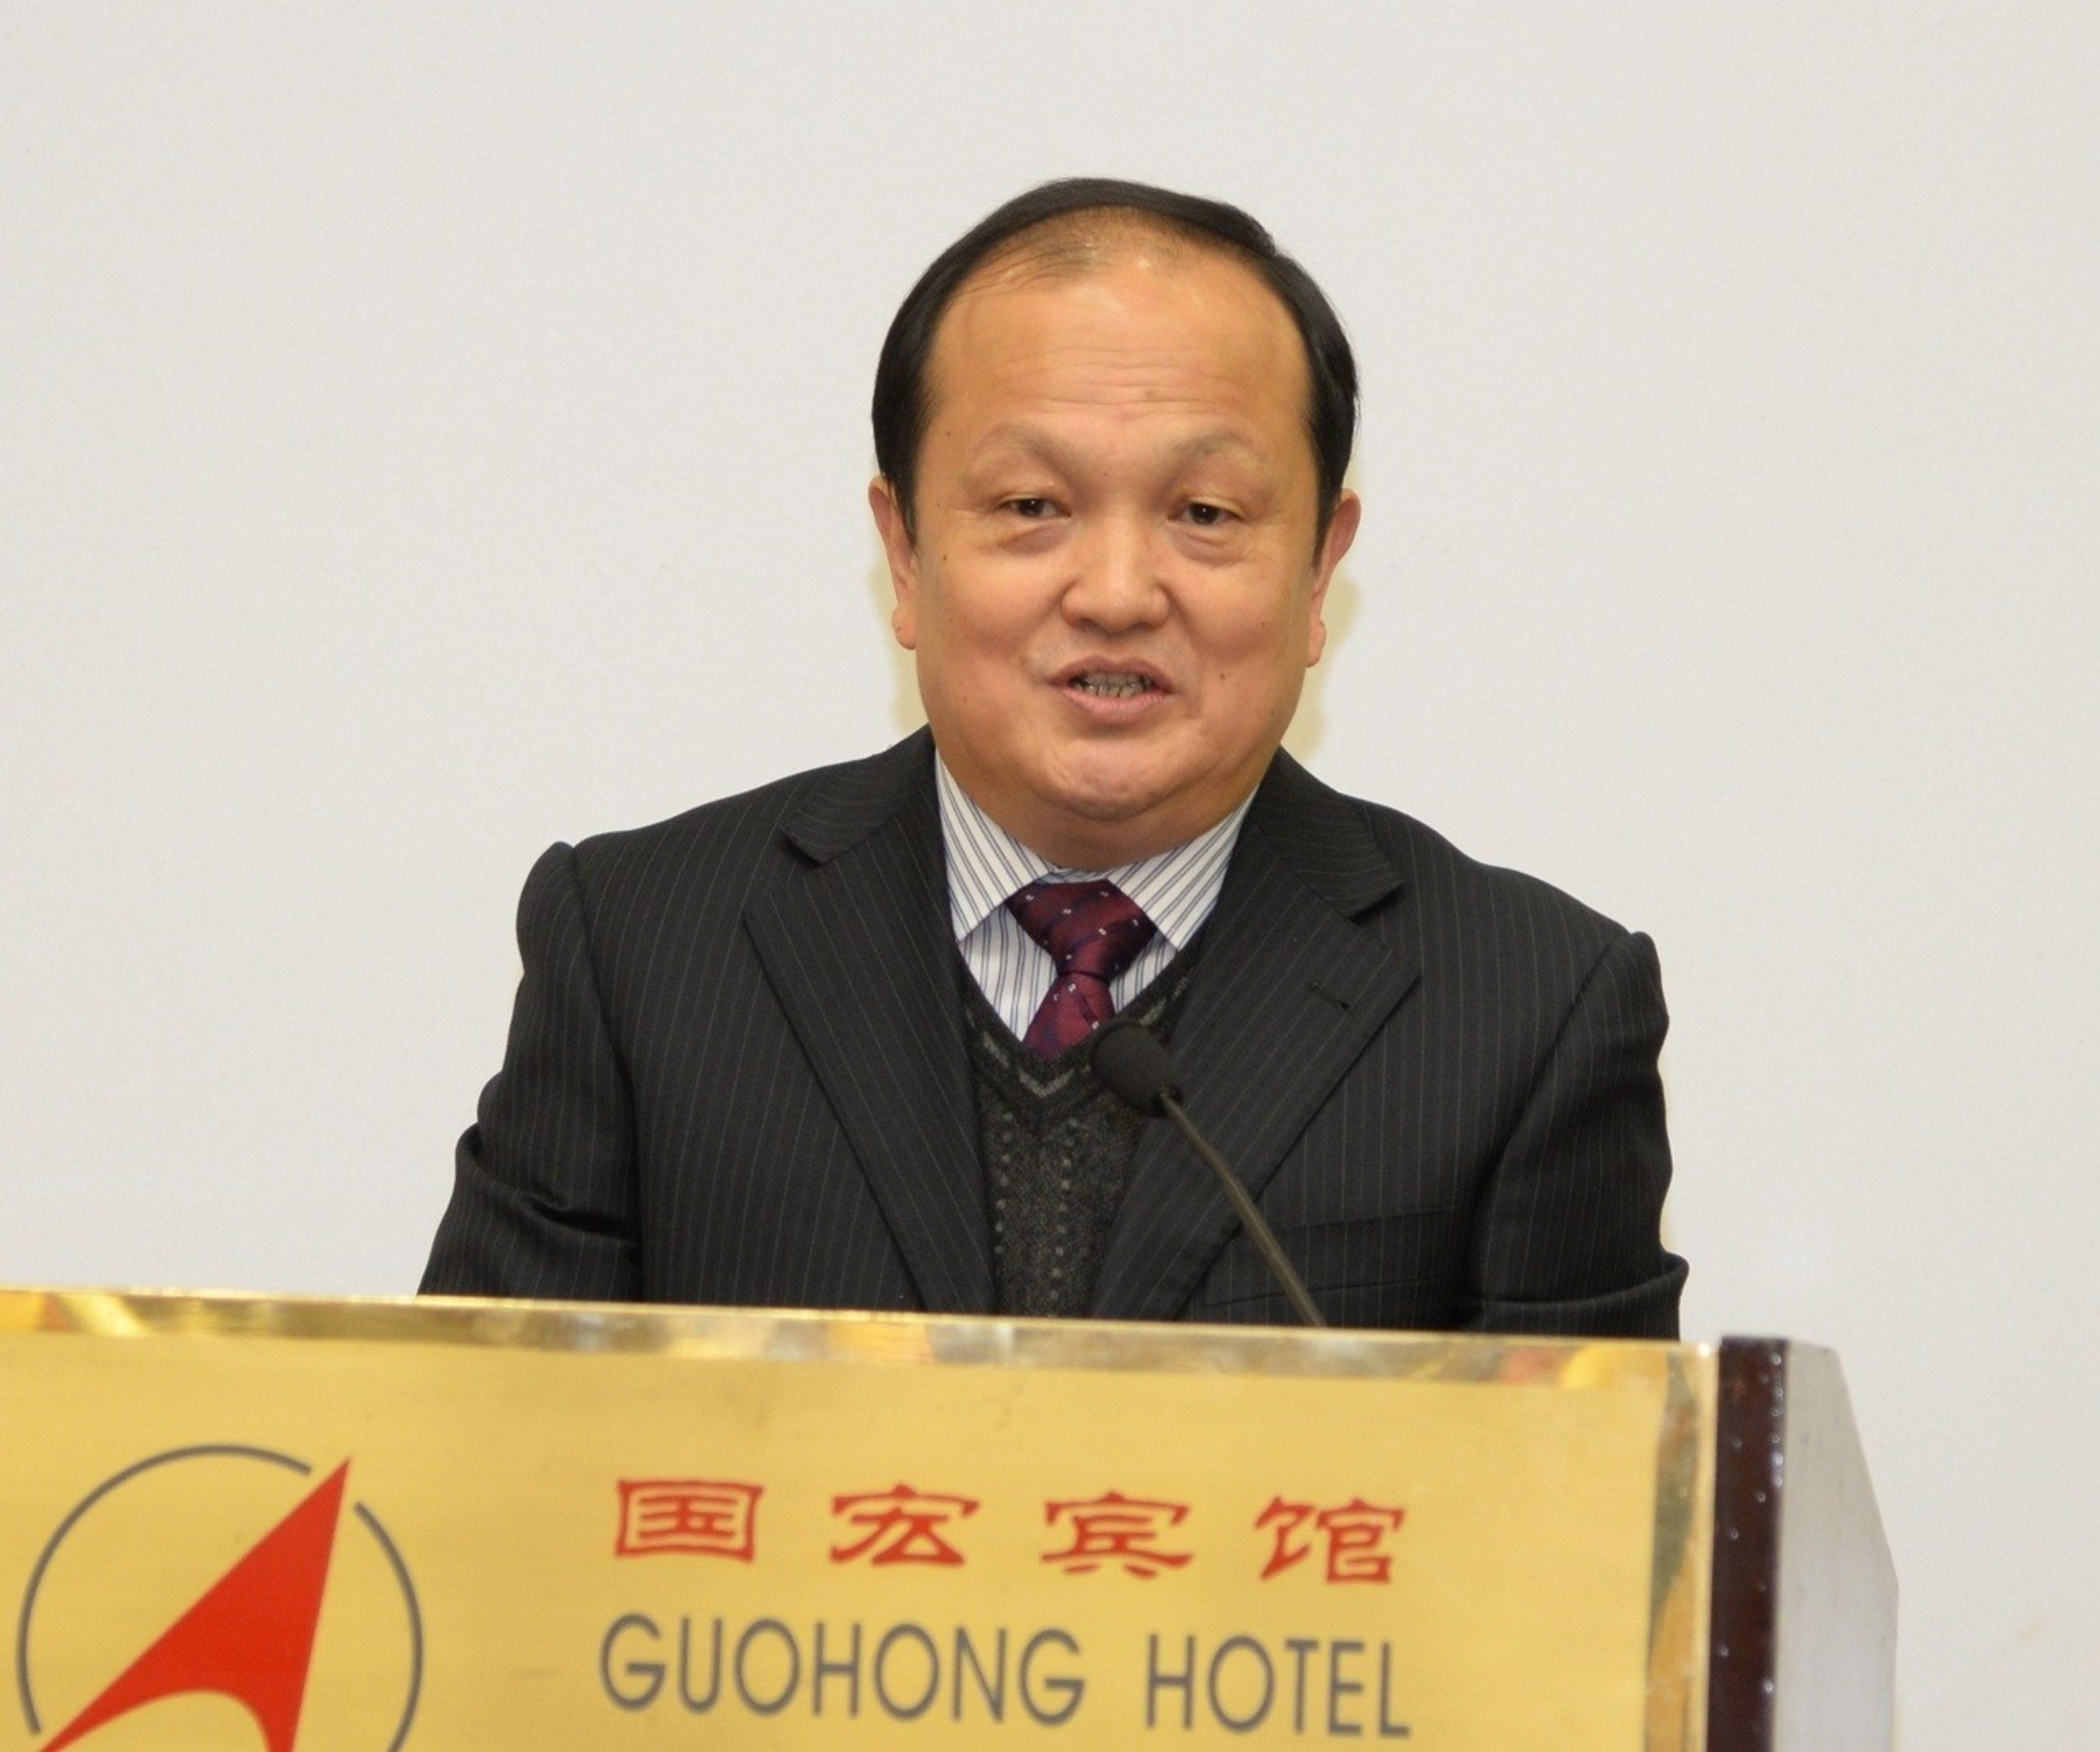 Prof. Gu Weidong of the Jiangsu Academy of Macroeconomic Research